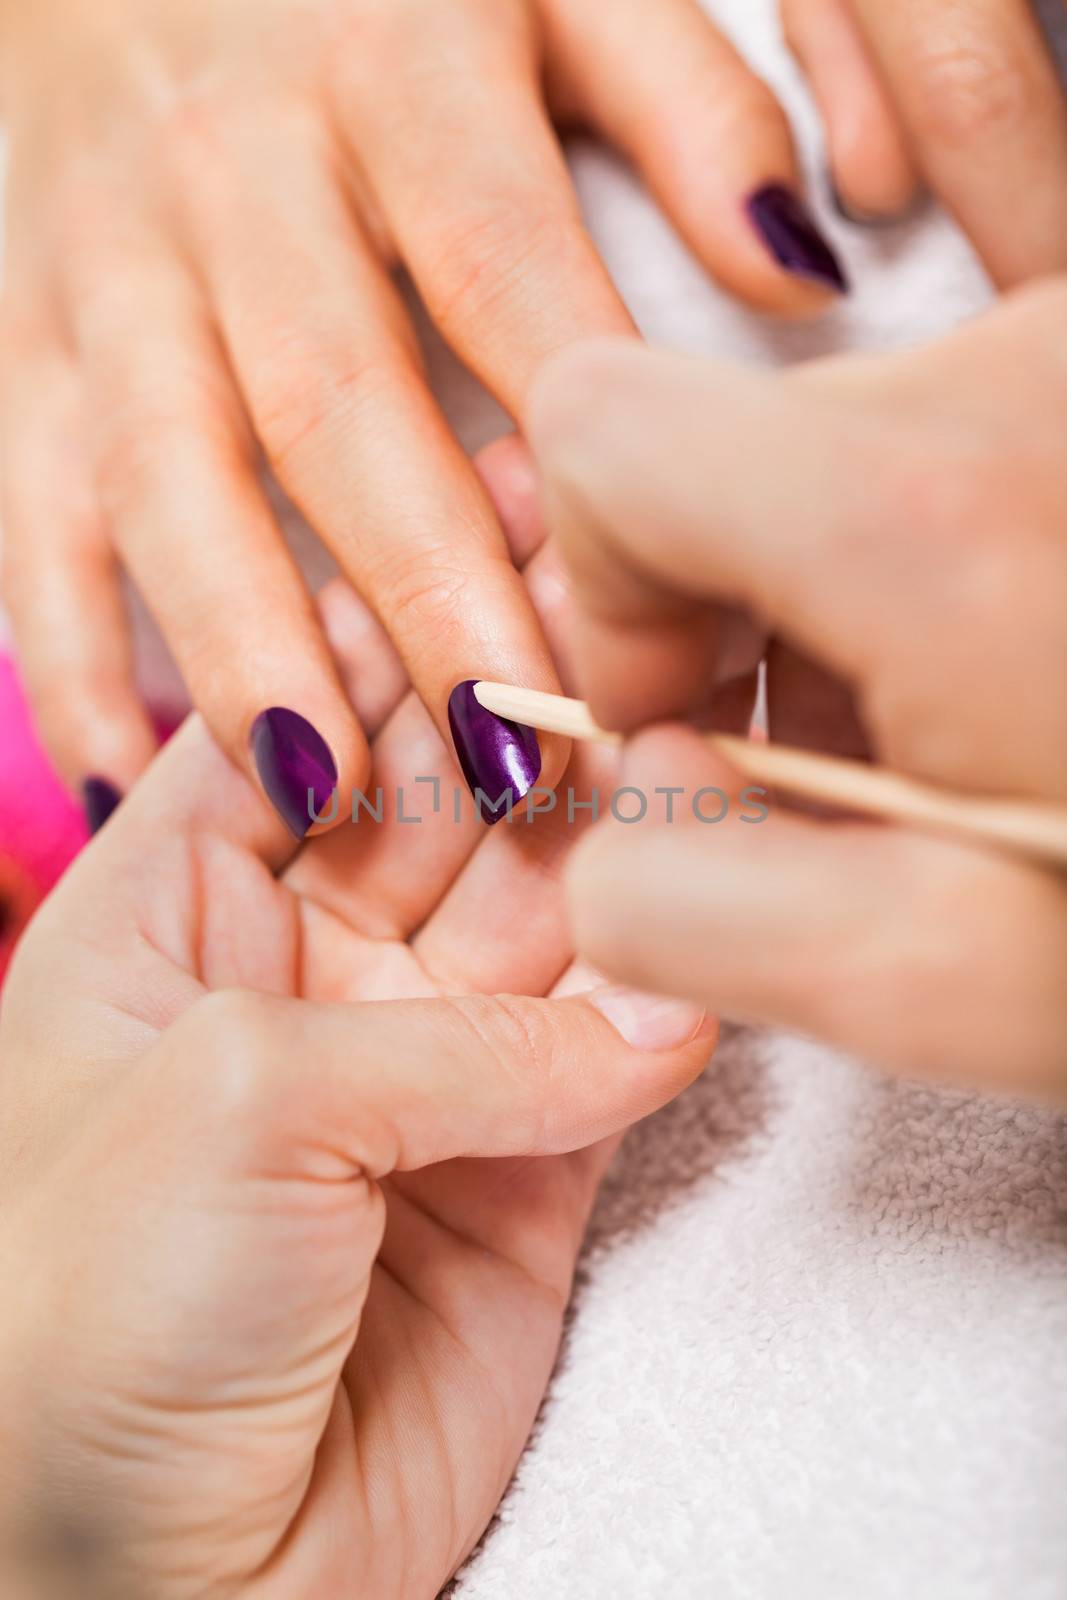 manicure making in beauty spa salon by juniart